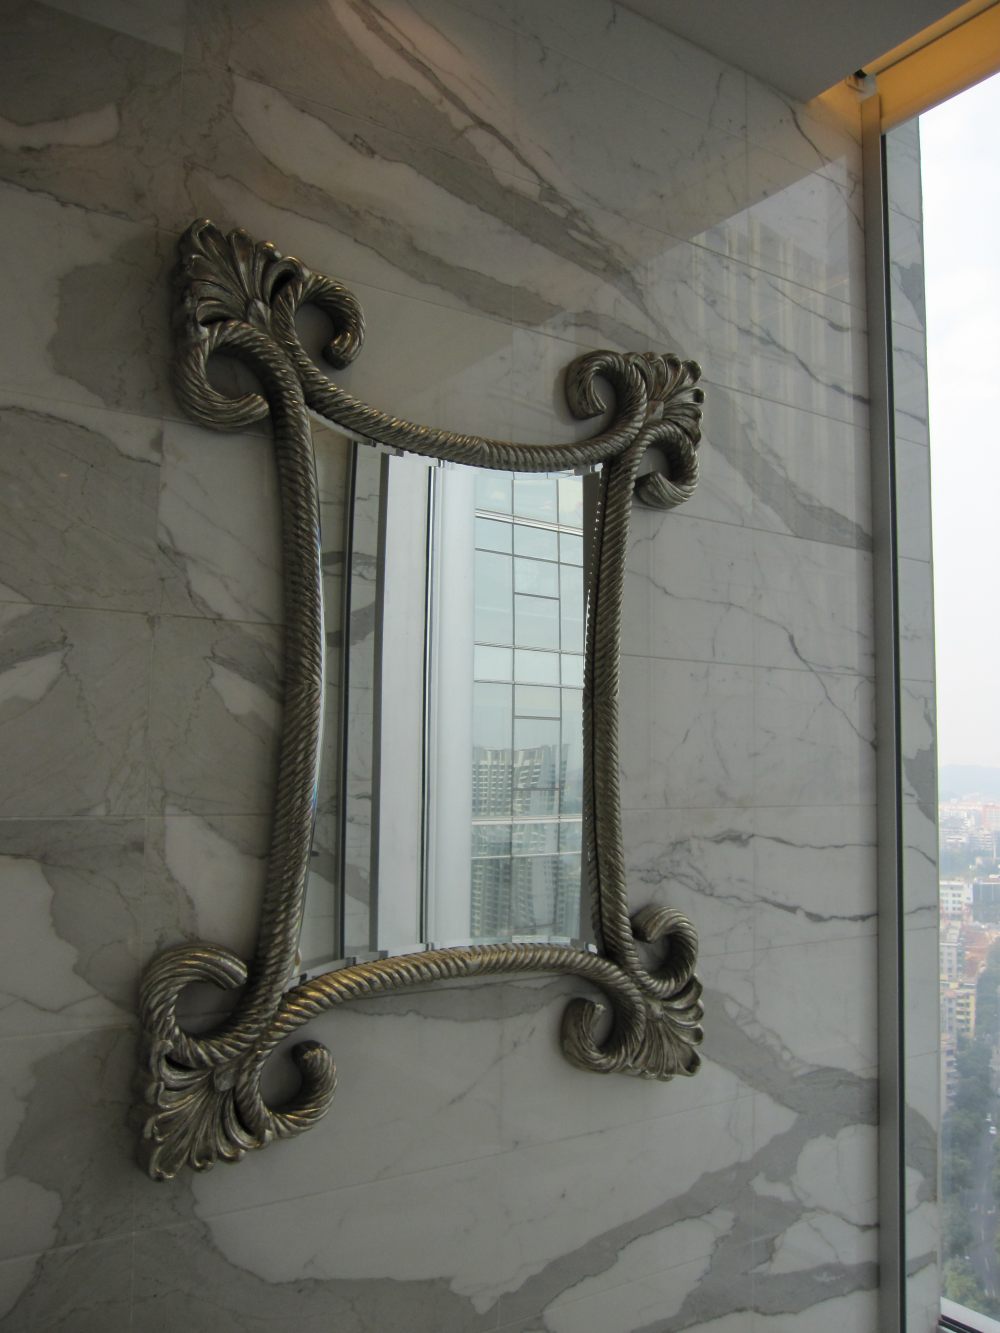 广州圣丰索菲特大酒店(Sofitel Guangzhou )(CCD)(20130702更新)_IMG_1535.JPG